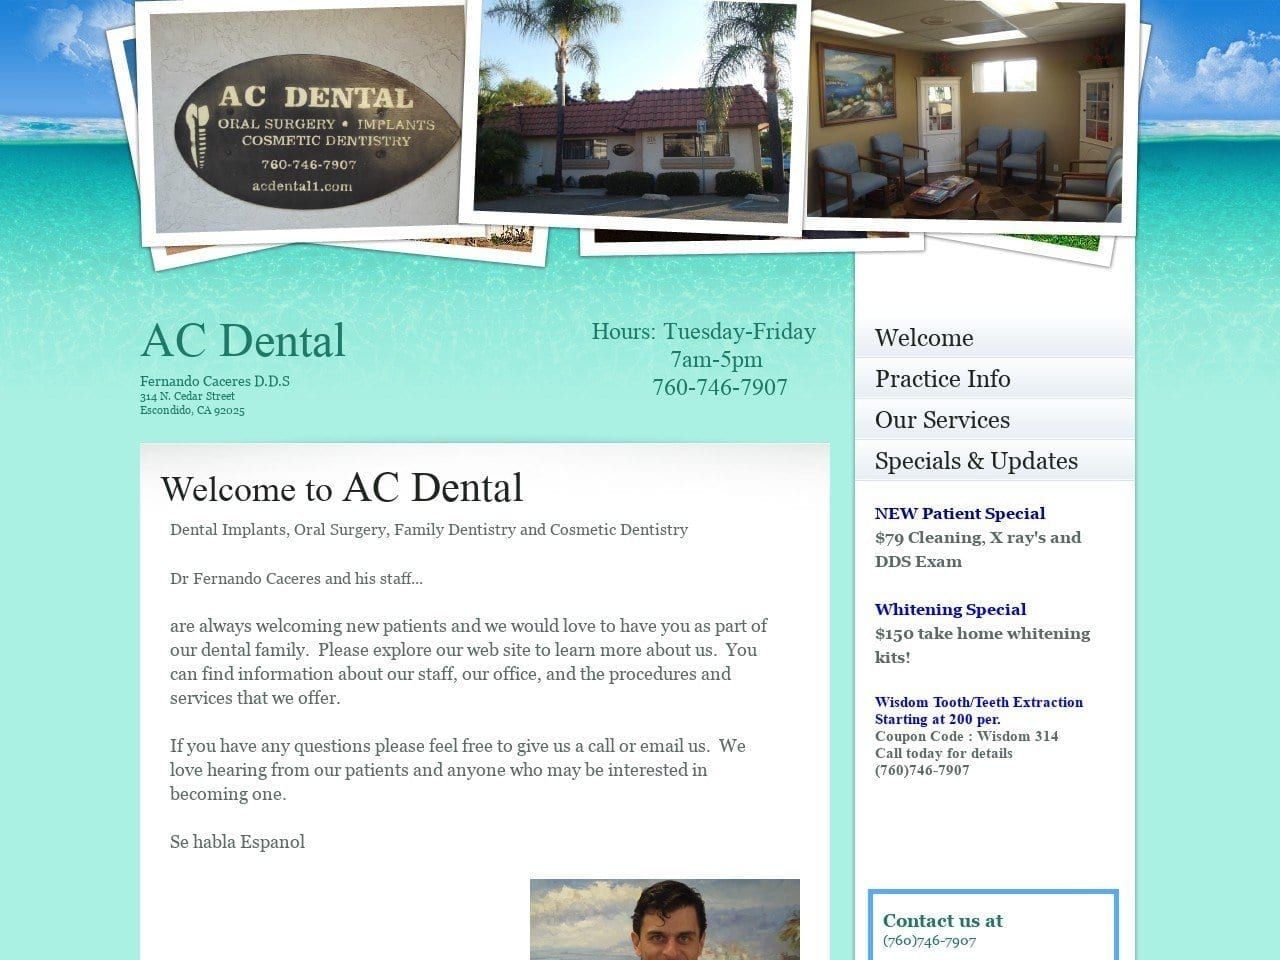 AC Dental / Fernando Caceres DDS Inc. Website Screenshot from acdental1.com